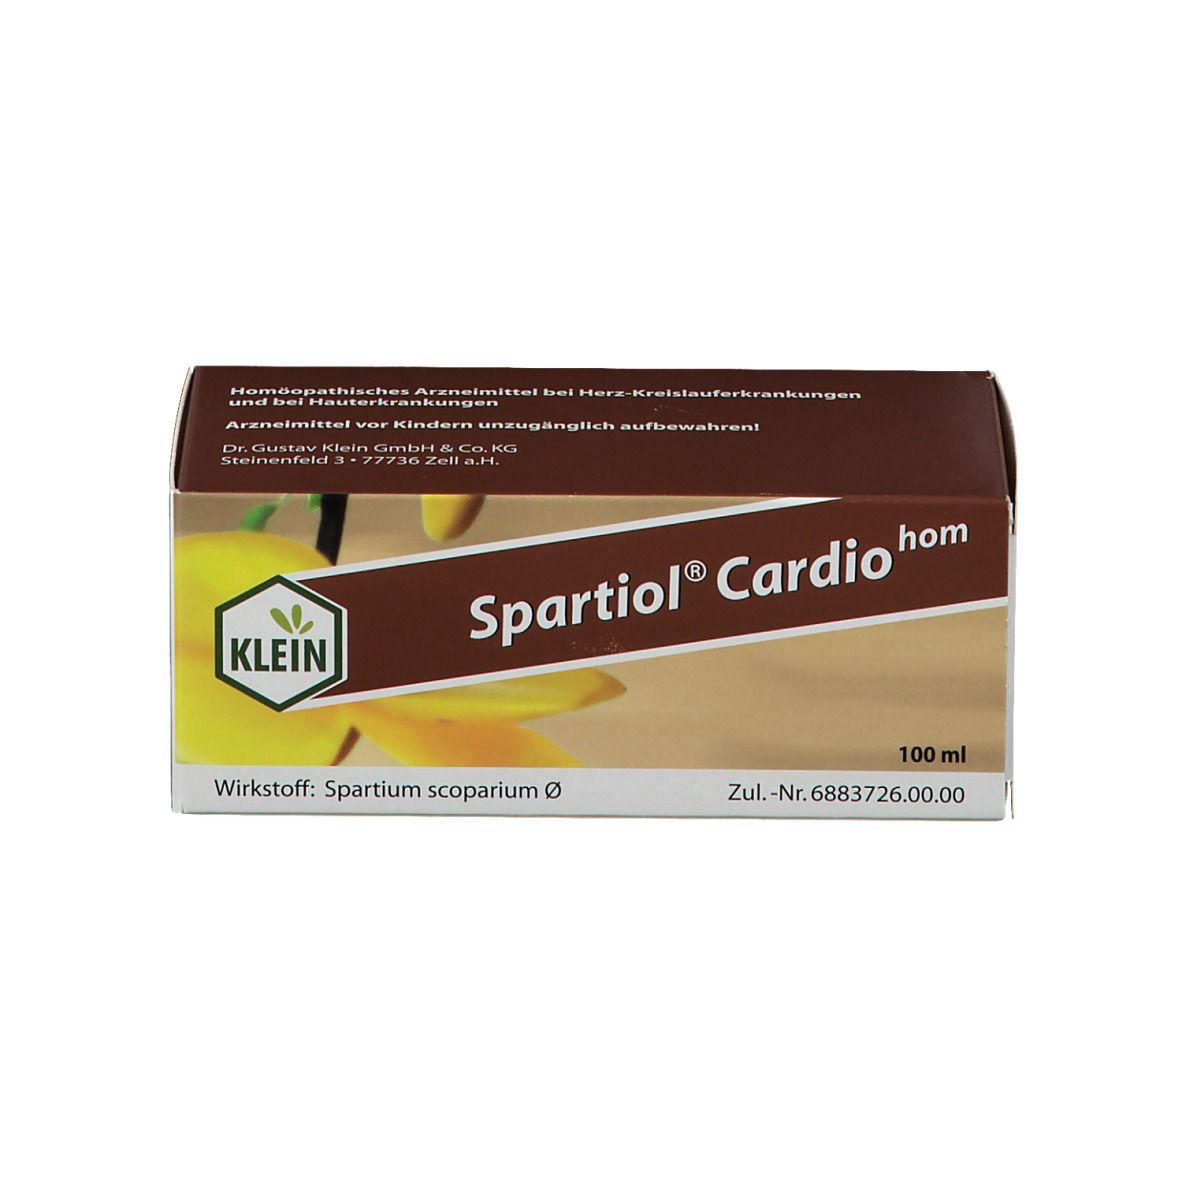 Spartiol® Cardiohom